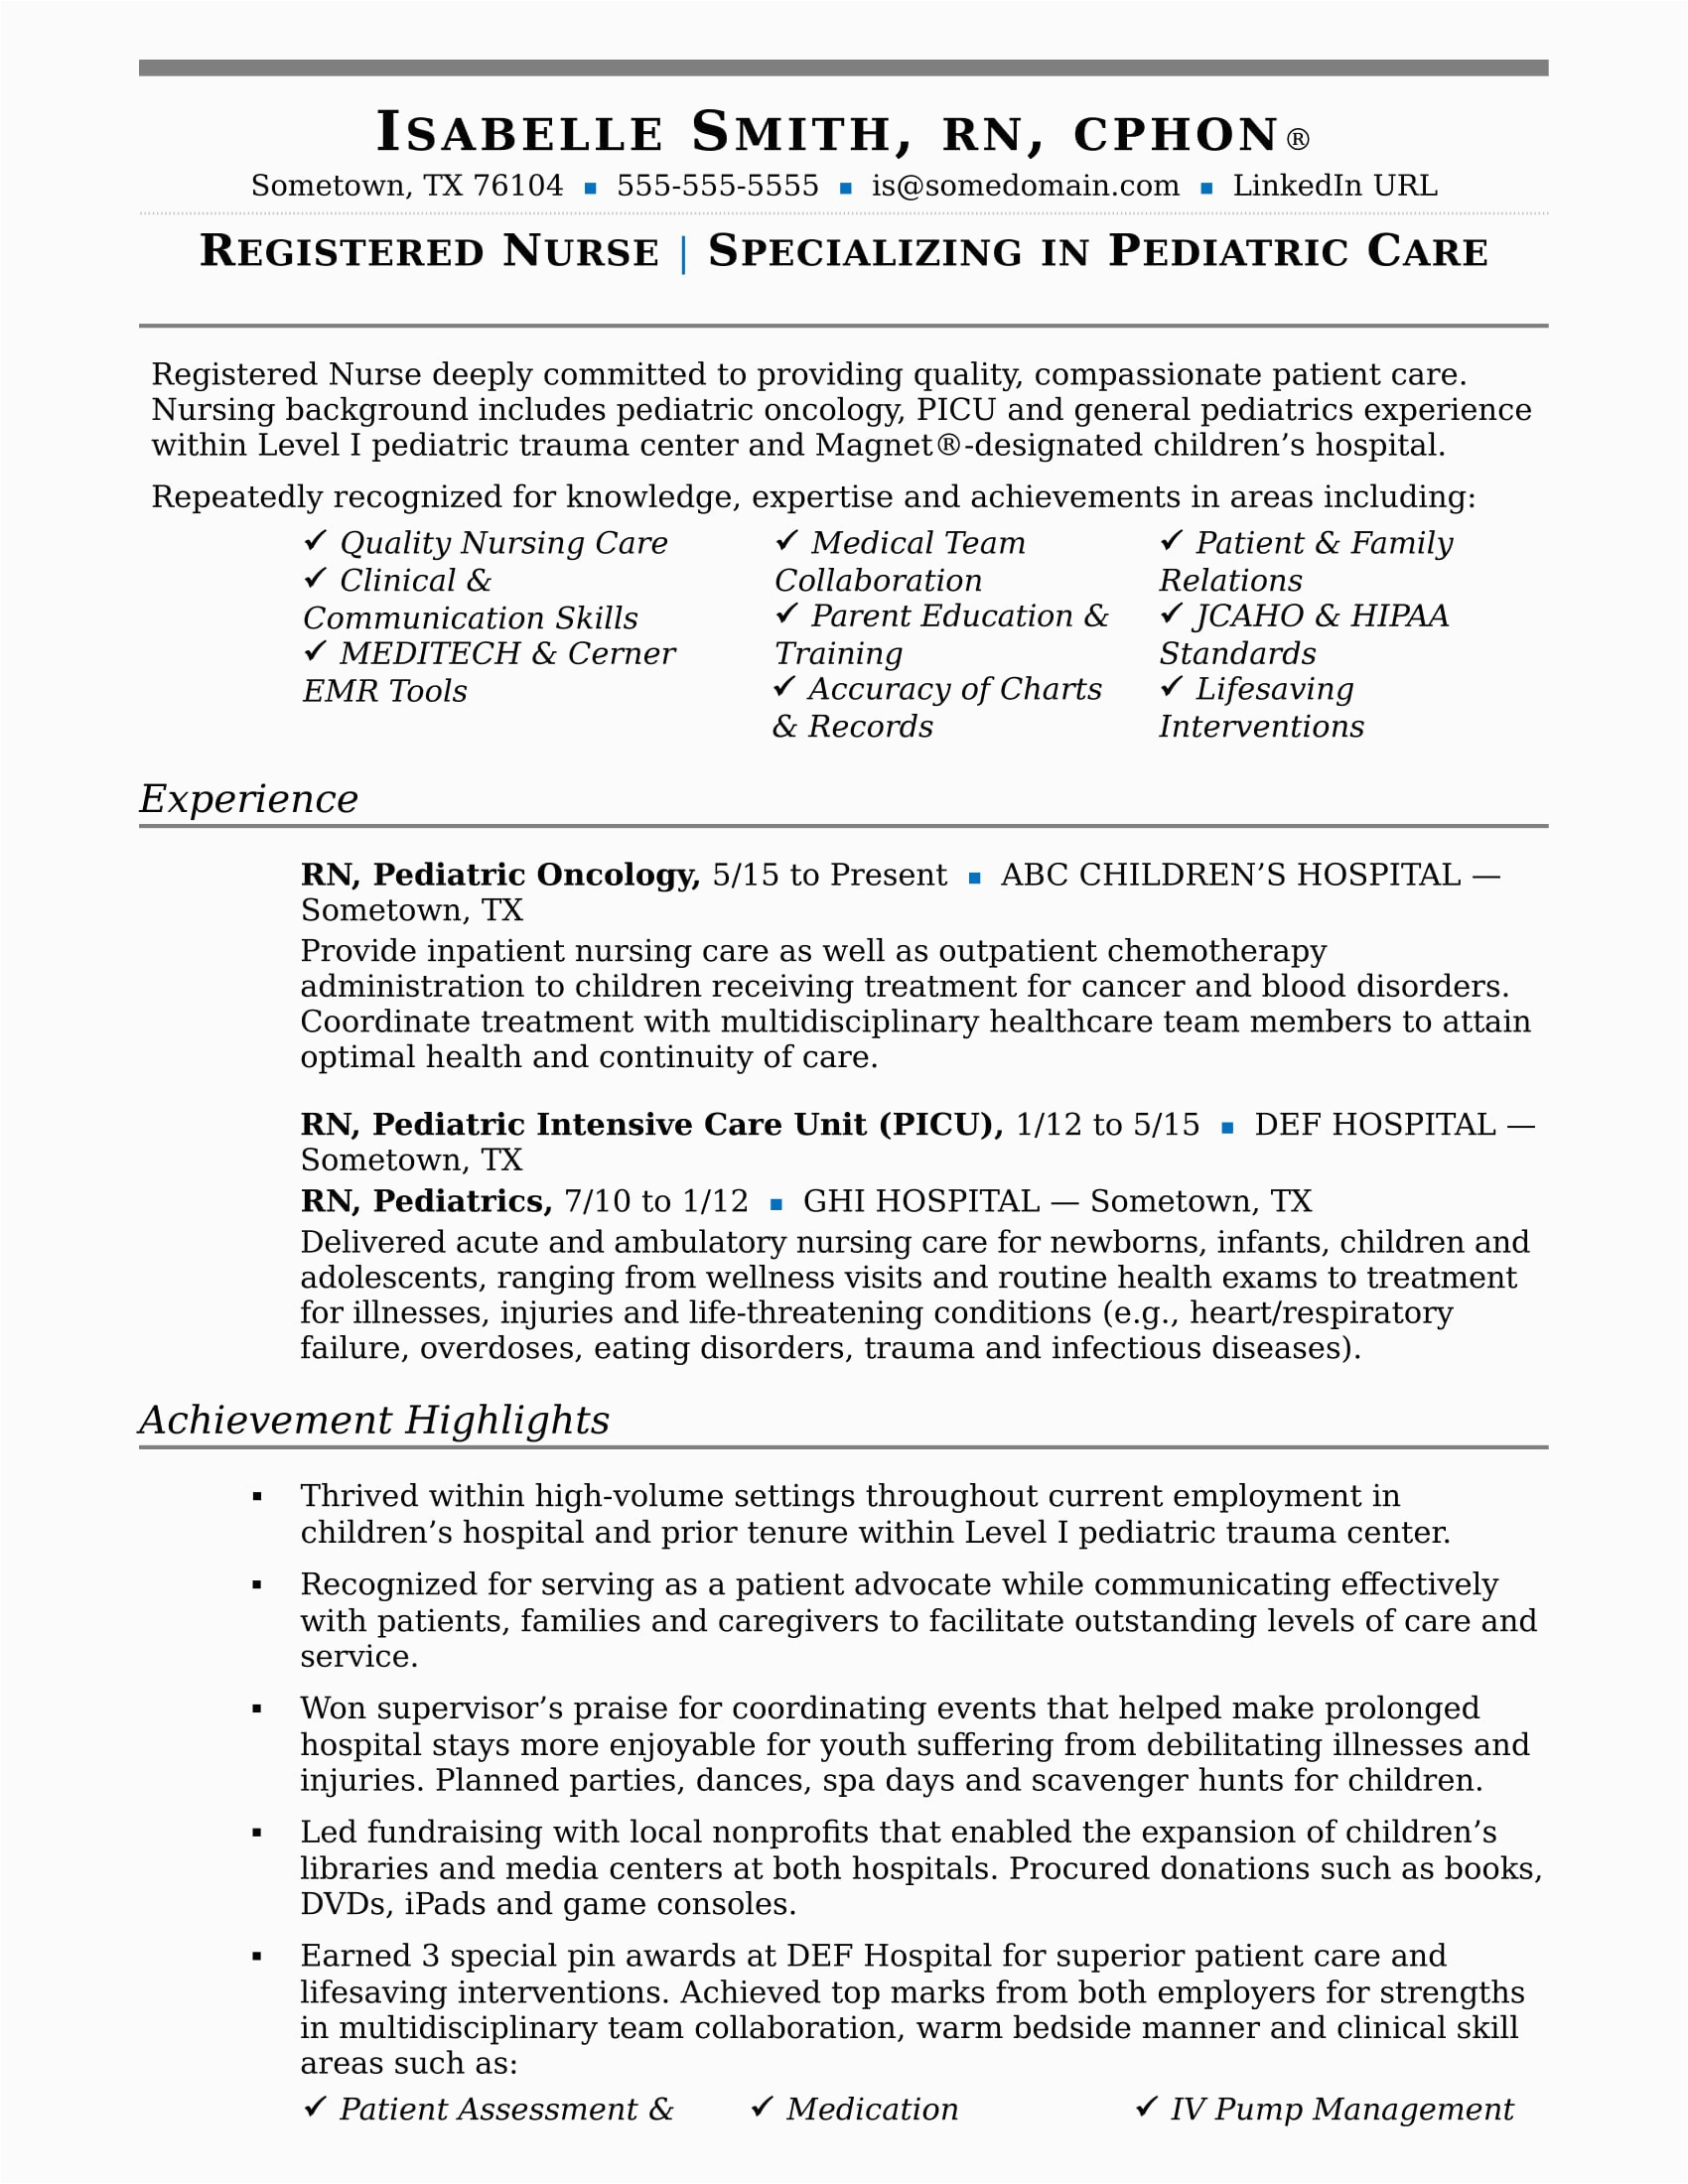 Sample Of A Good Resume for Nurses Nurse Resume Sample